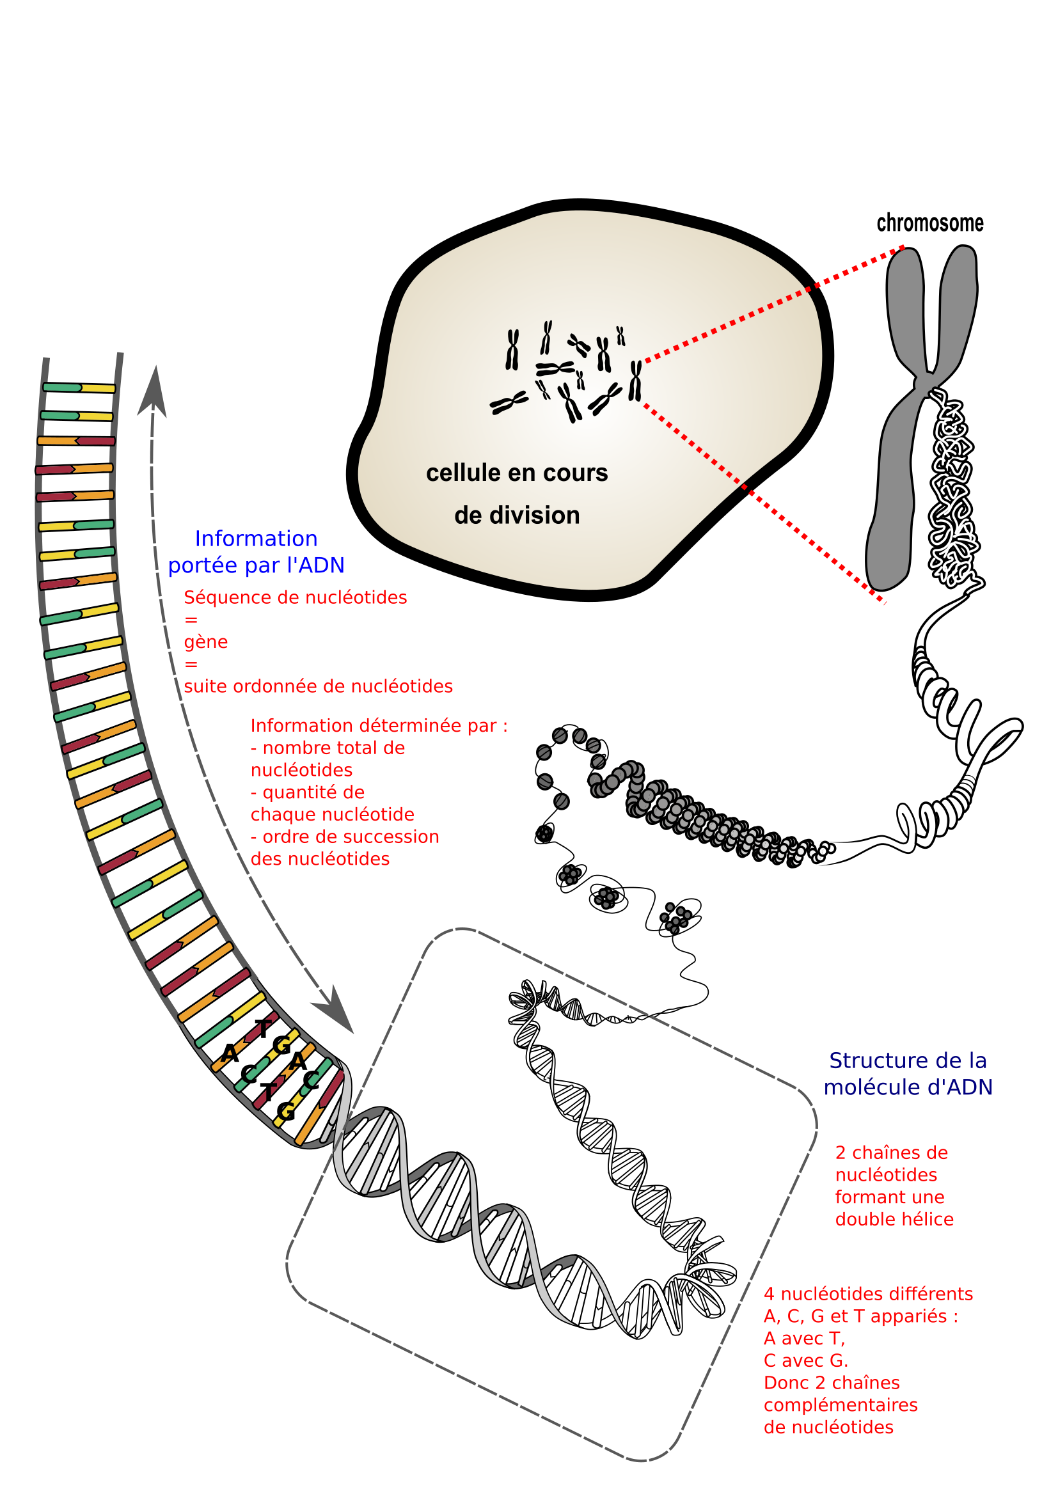 <i> Superenroulement de l’AND : Du chromosome à l'ADN porteur d'une information (légende) .svg par NIH, utilisateur: Phrood, En rouge  via wikimedia commons,  CC-Zéro https://commons.wikimedia.org/wiki/File:Du_chromosome_%C3%A0_l%27ADN_porteur_d%27une_information_(avec_l%C3%A9gende).svg</i>